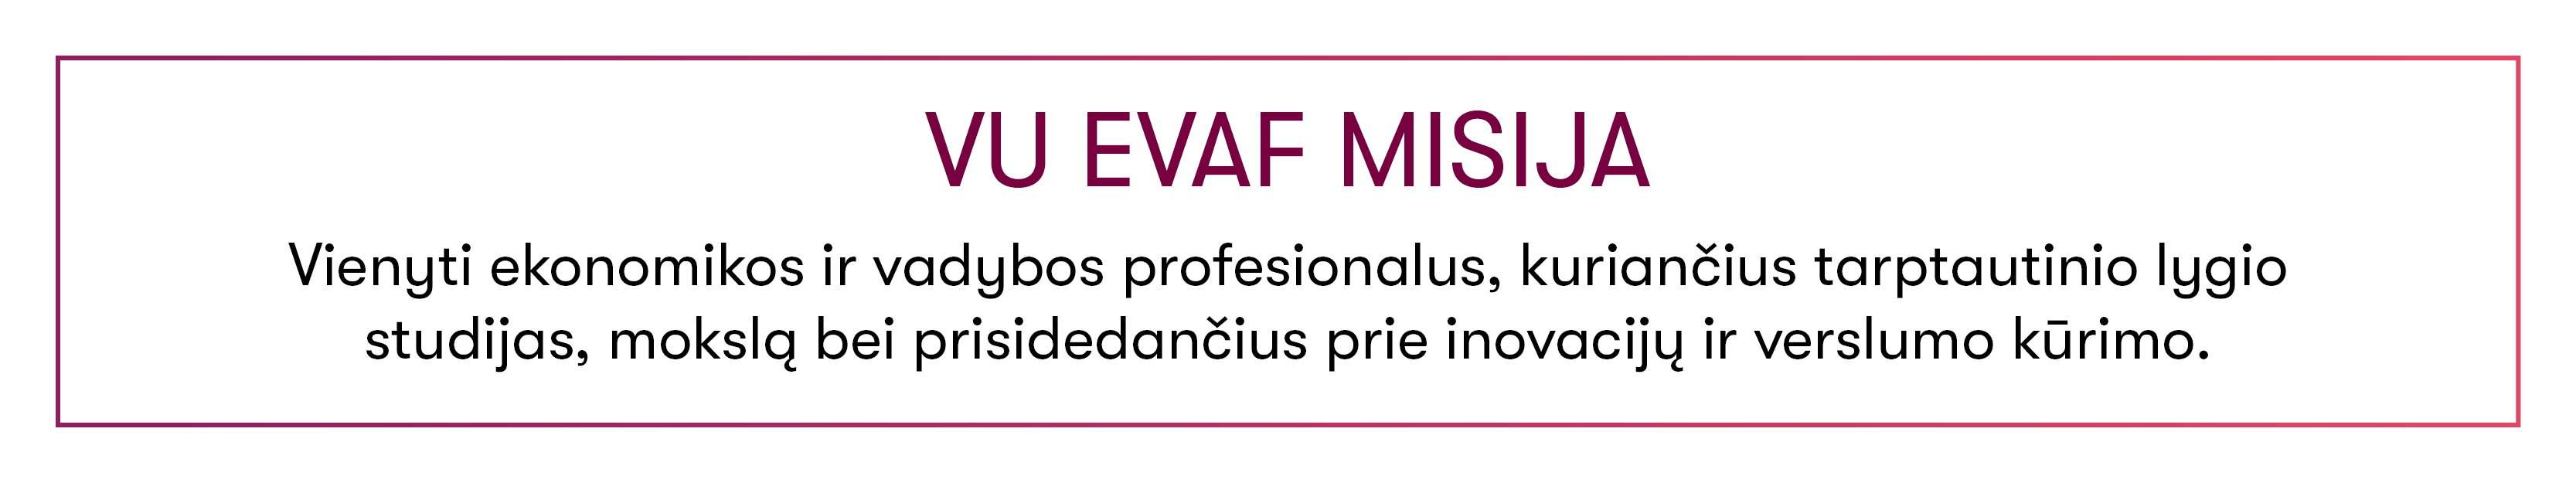 EVAF misija